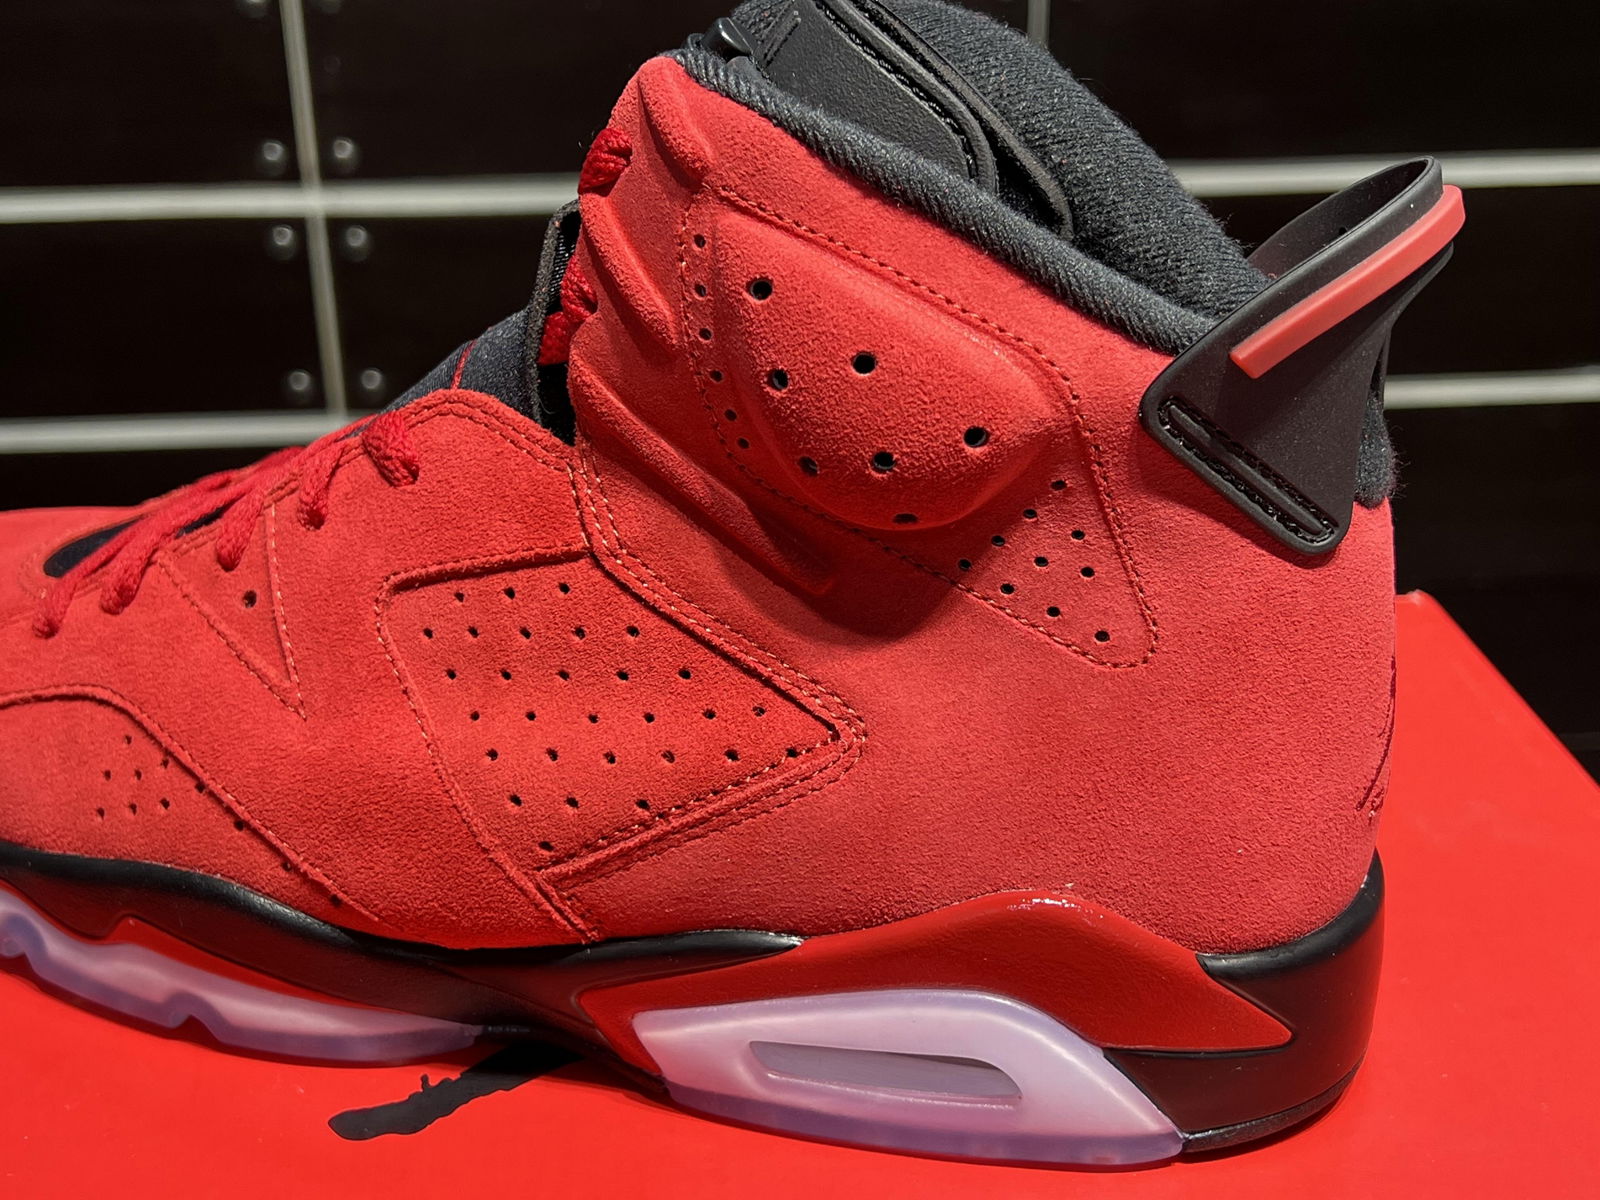 Air Jordan 6 Toro Varsity Red/Black6Red suede basketball shoes  5